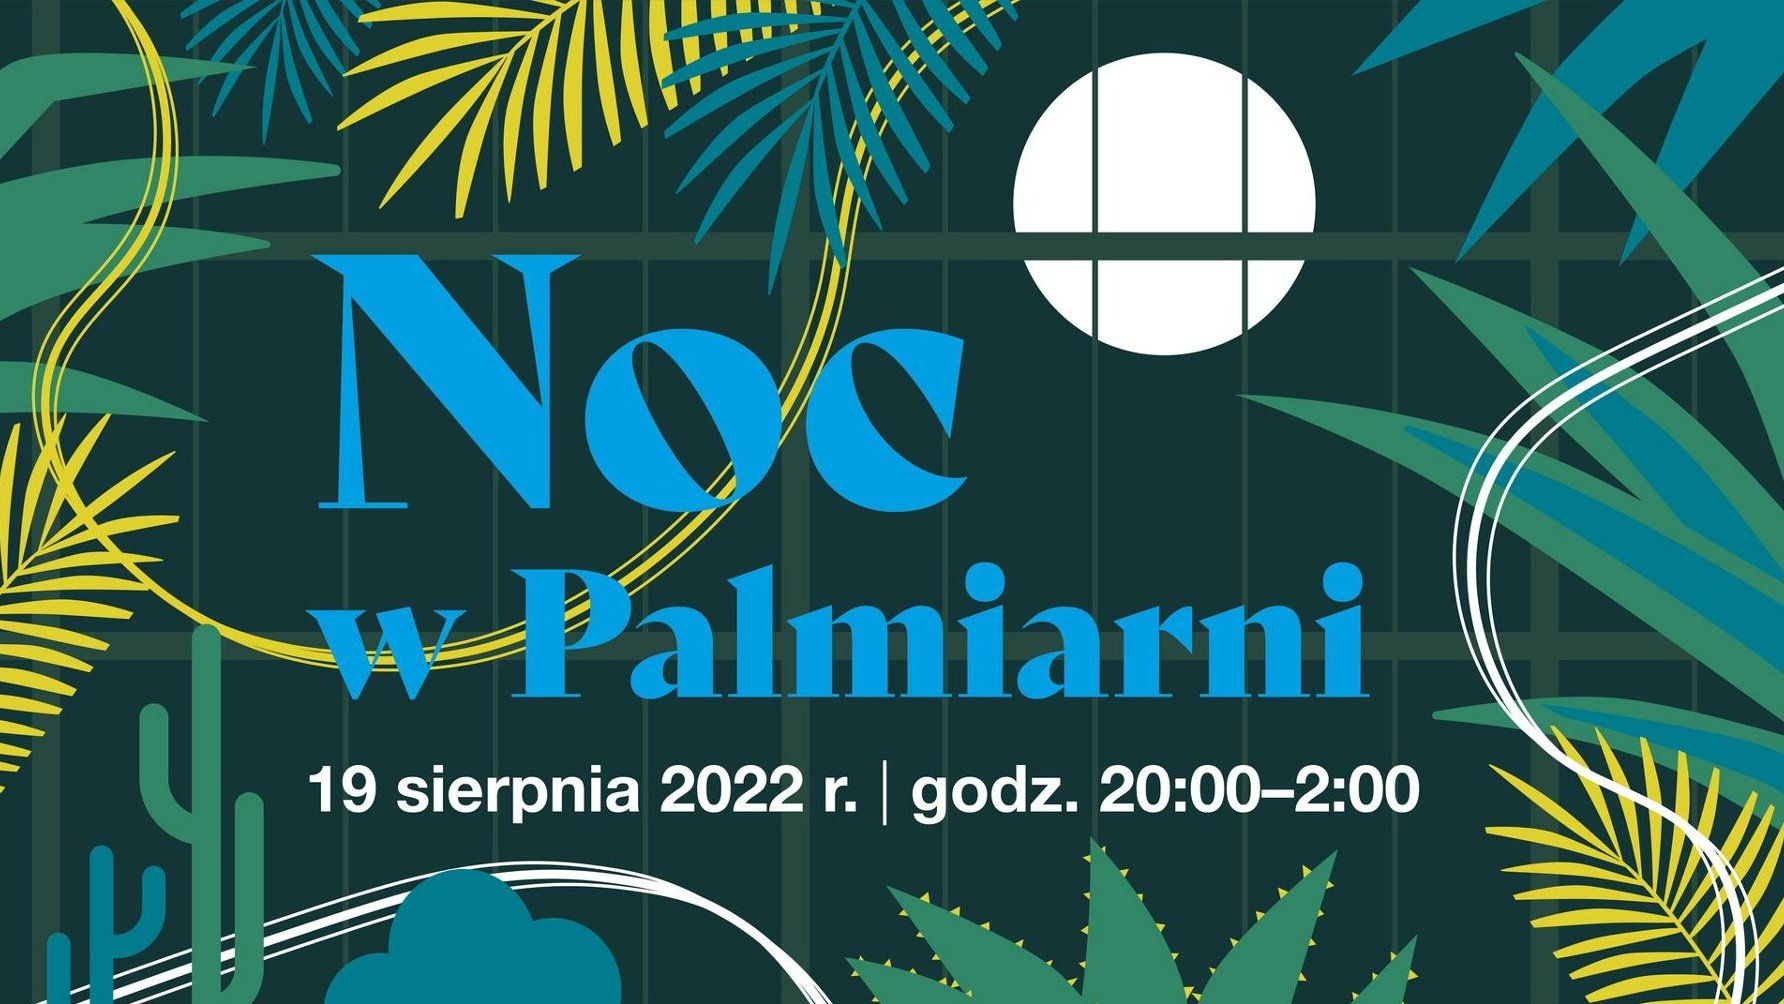 Plakat informujący o Nocy w Palmiarni.